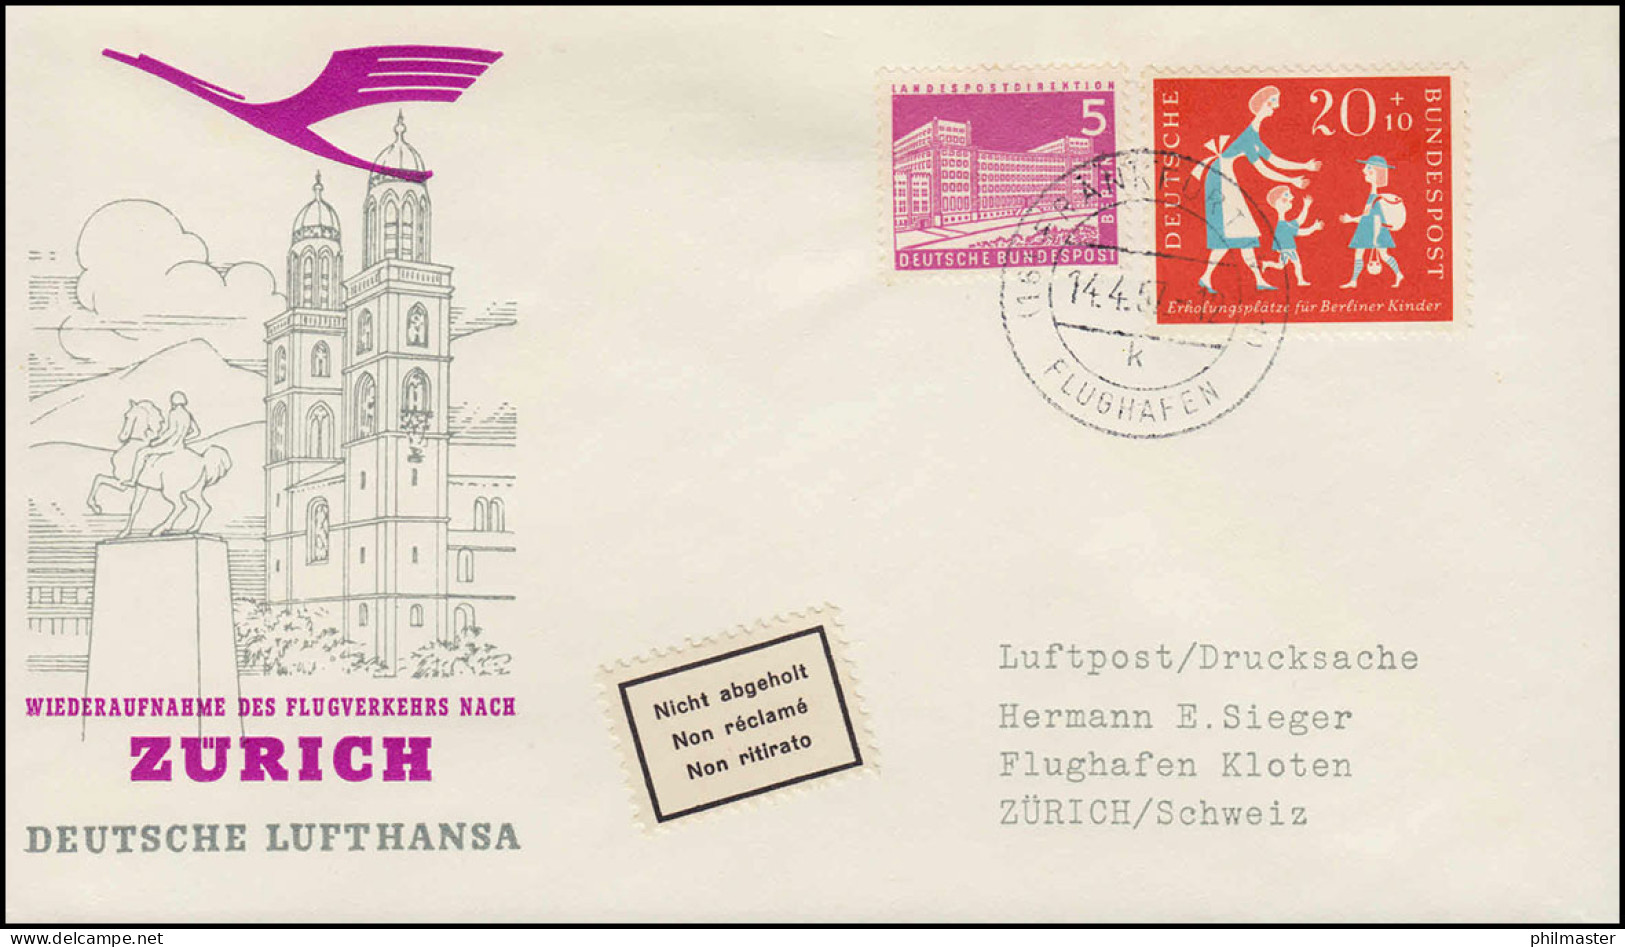 Eröffnungsflug Lufthansa Wiederaufnahme Flugverkehr FRANKFURT/ ZÜRICH 14.4.57 - First Flight Covers